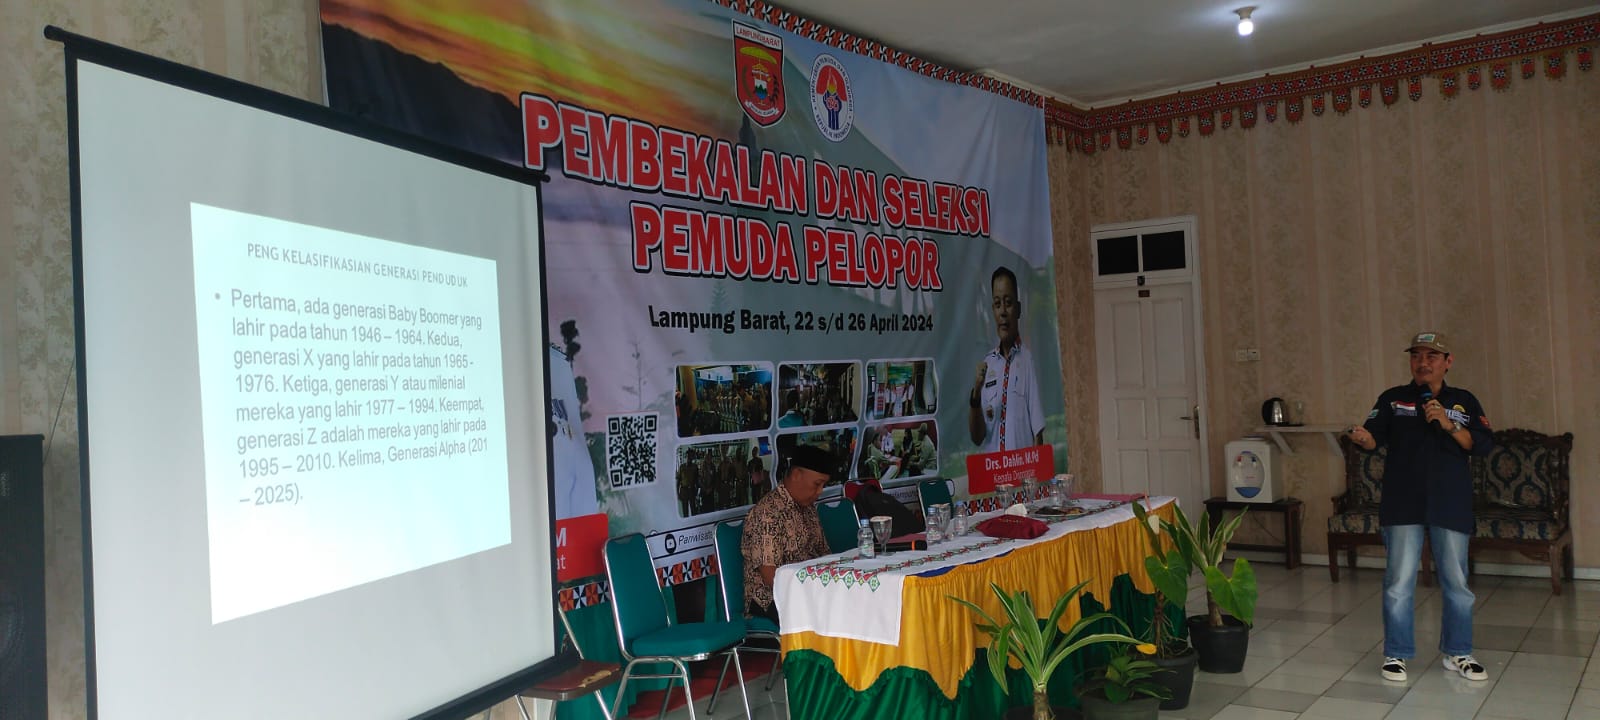 KKI Lampung Barat Jadi Narasumber Pada Kegiatan Seleksi Pemuda Pelopor 2024